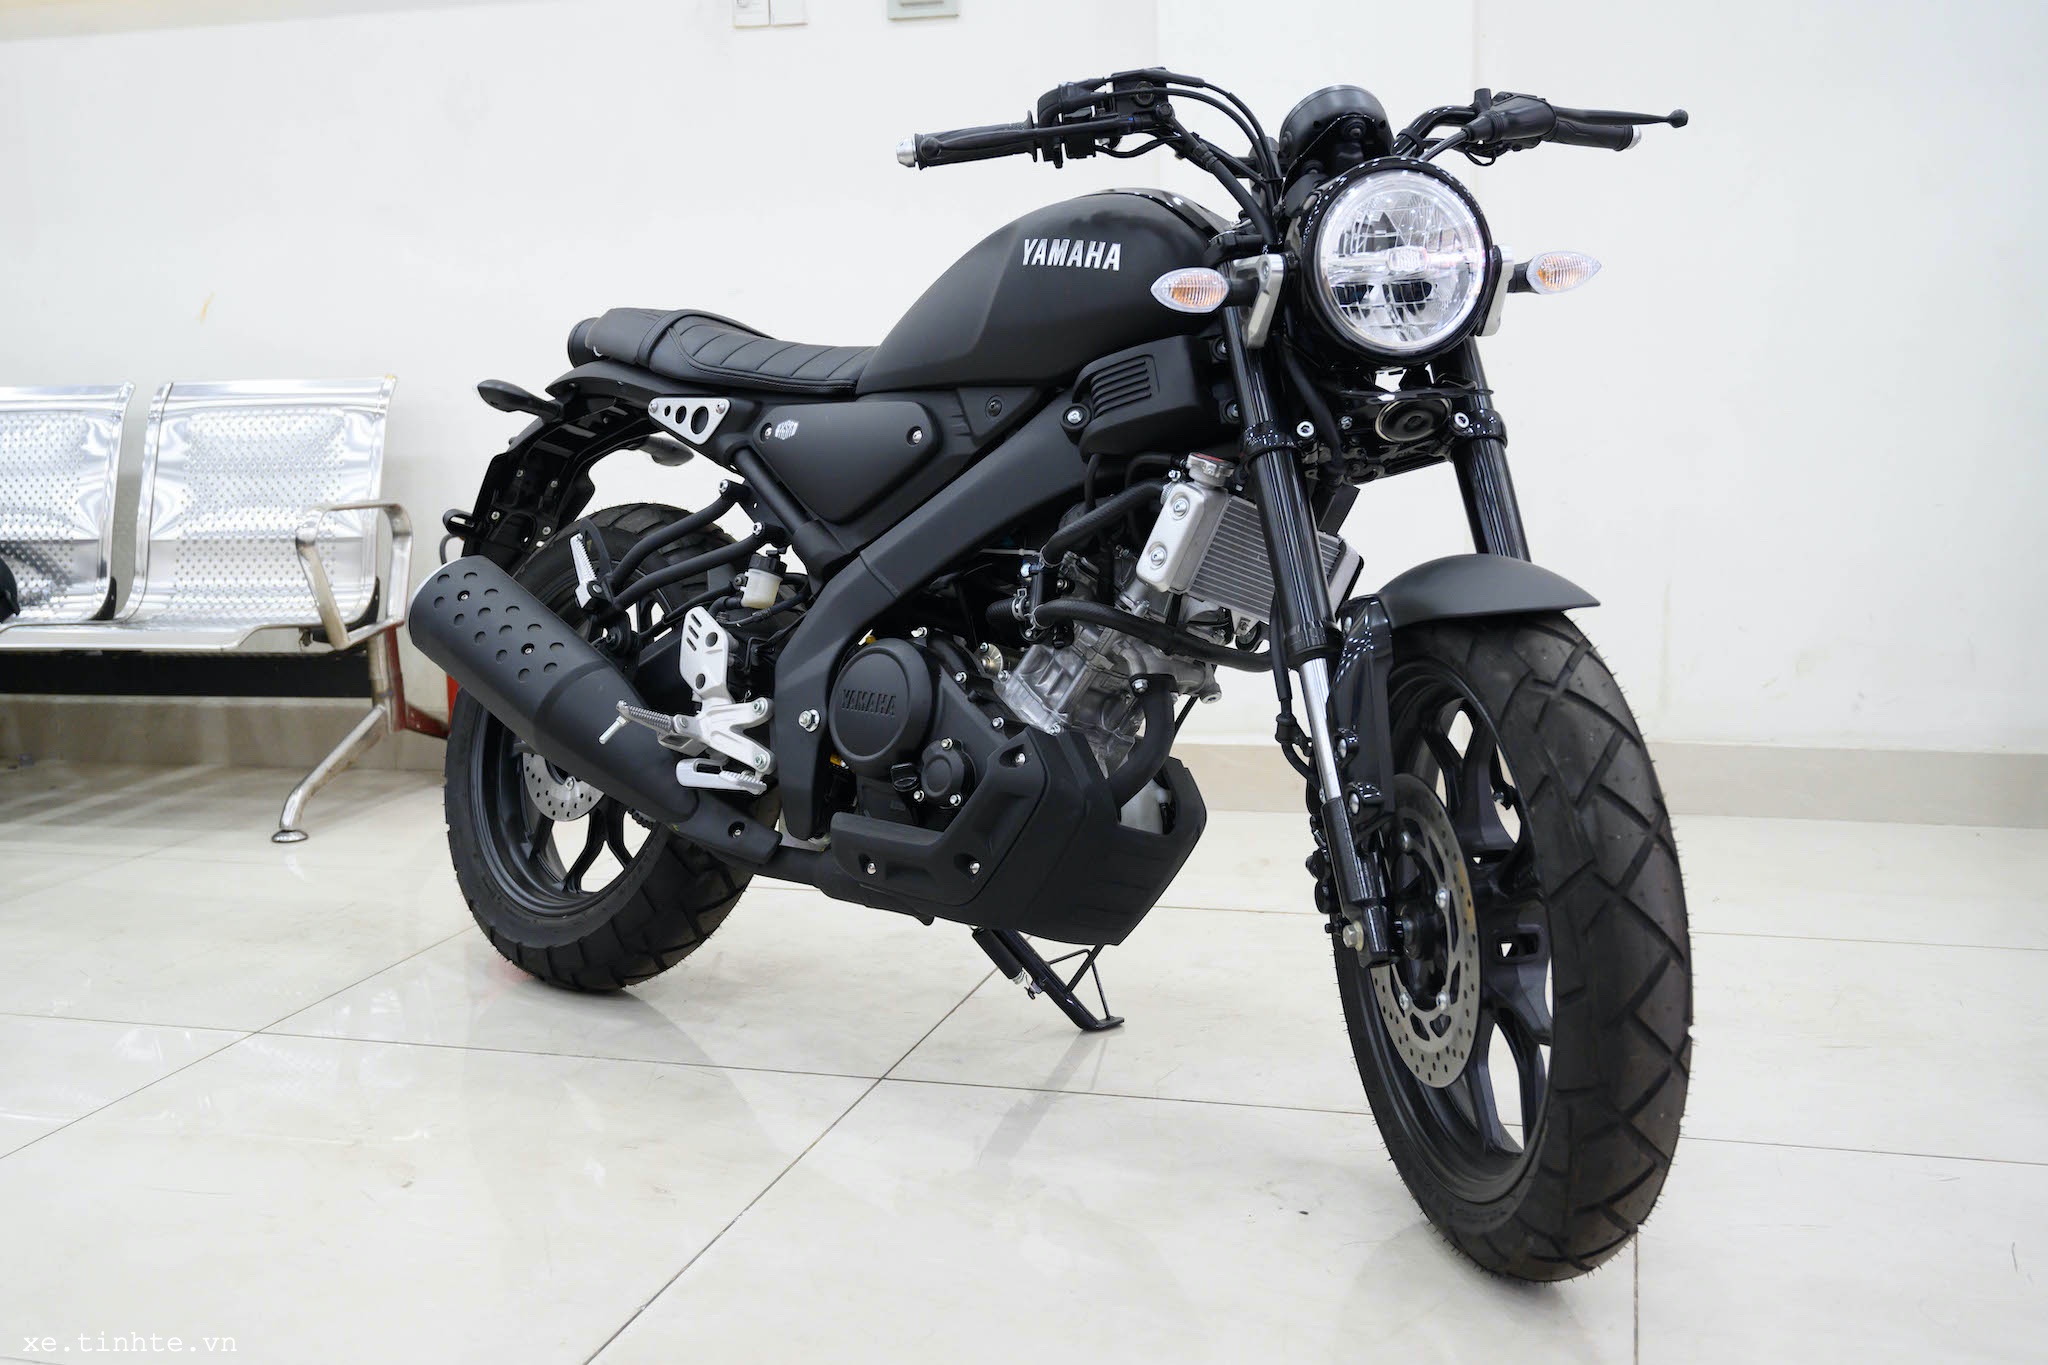 Đánh giá chi tiết môtô cỡ nhỏ Yamaha XSR 155 Cuốn hút phái mạnh